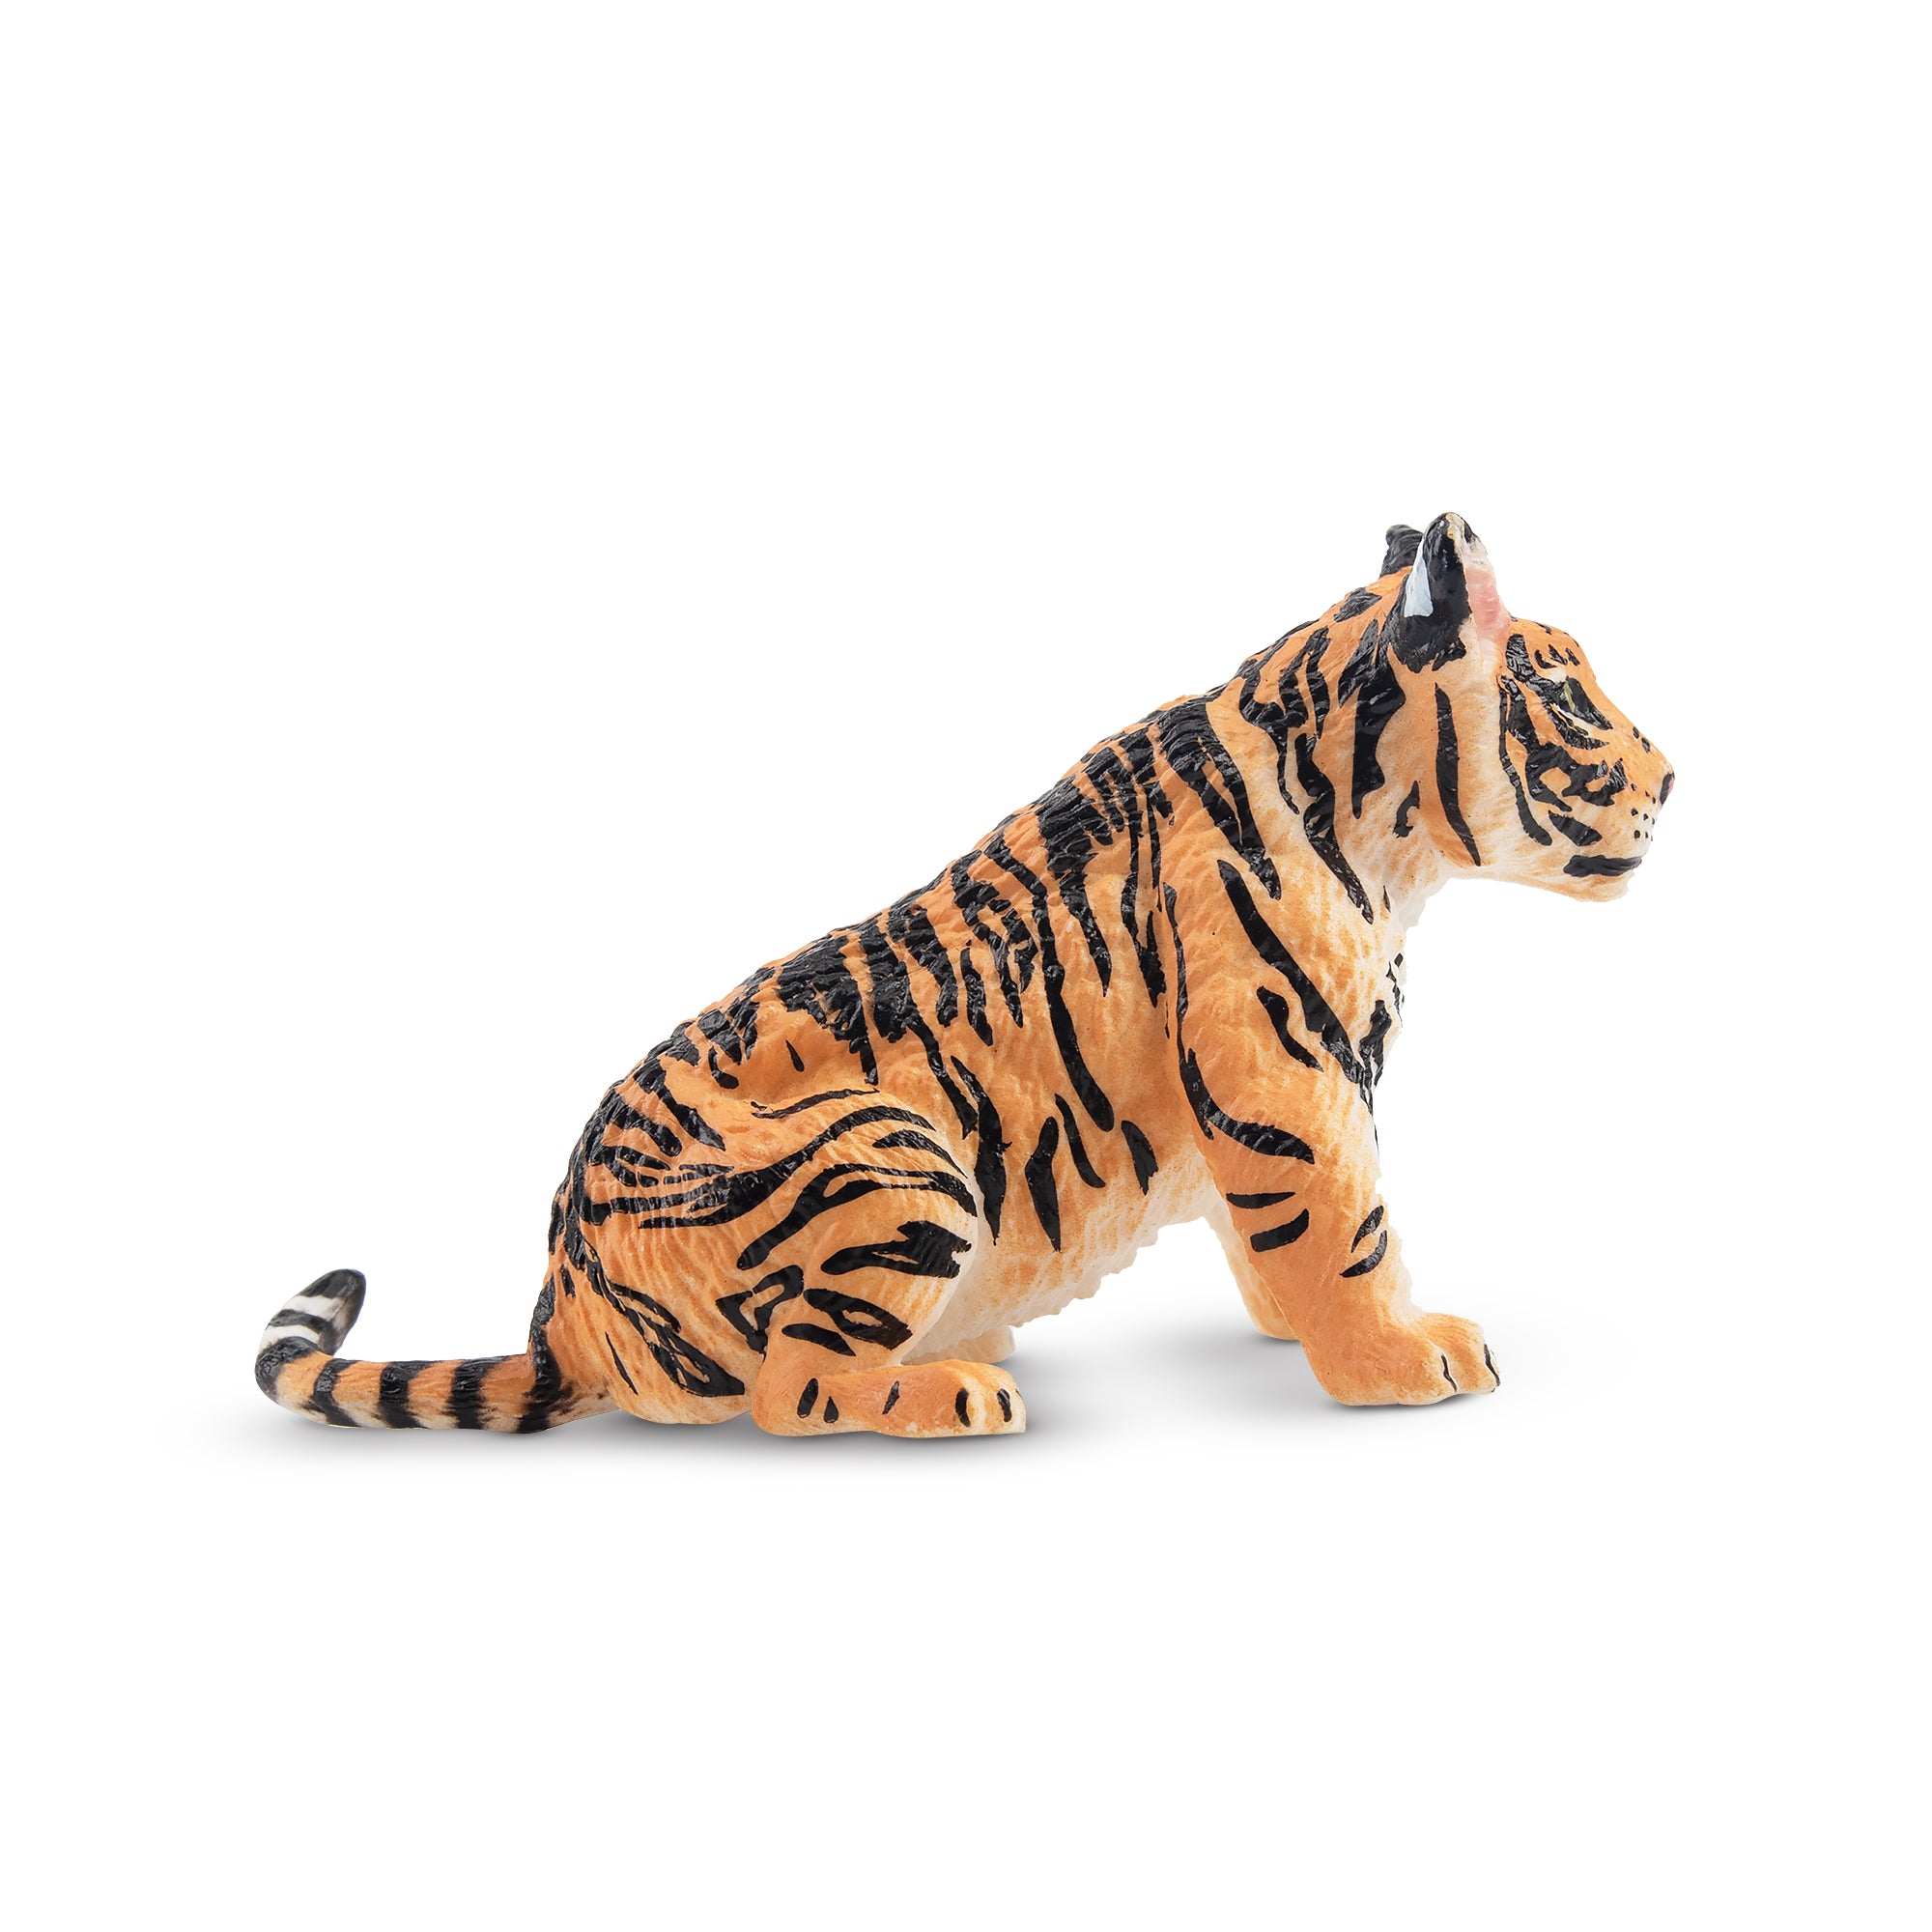 Toymany Tiger Cub Figurine Toy